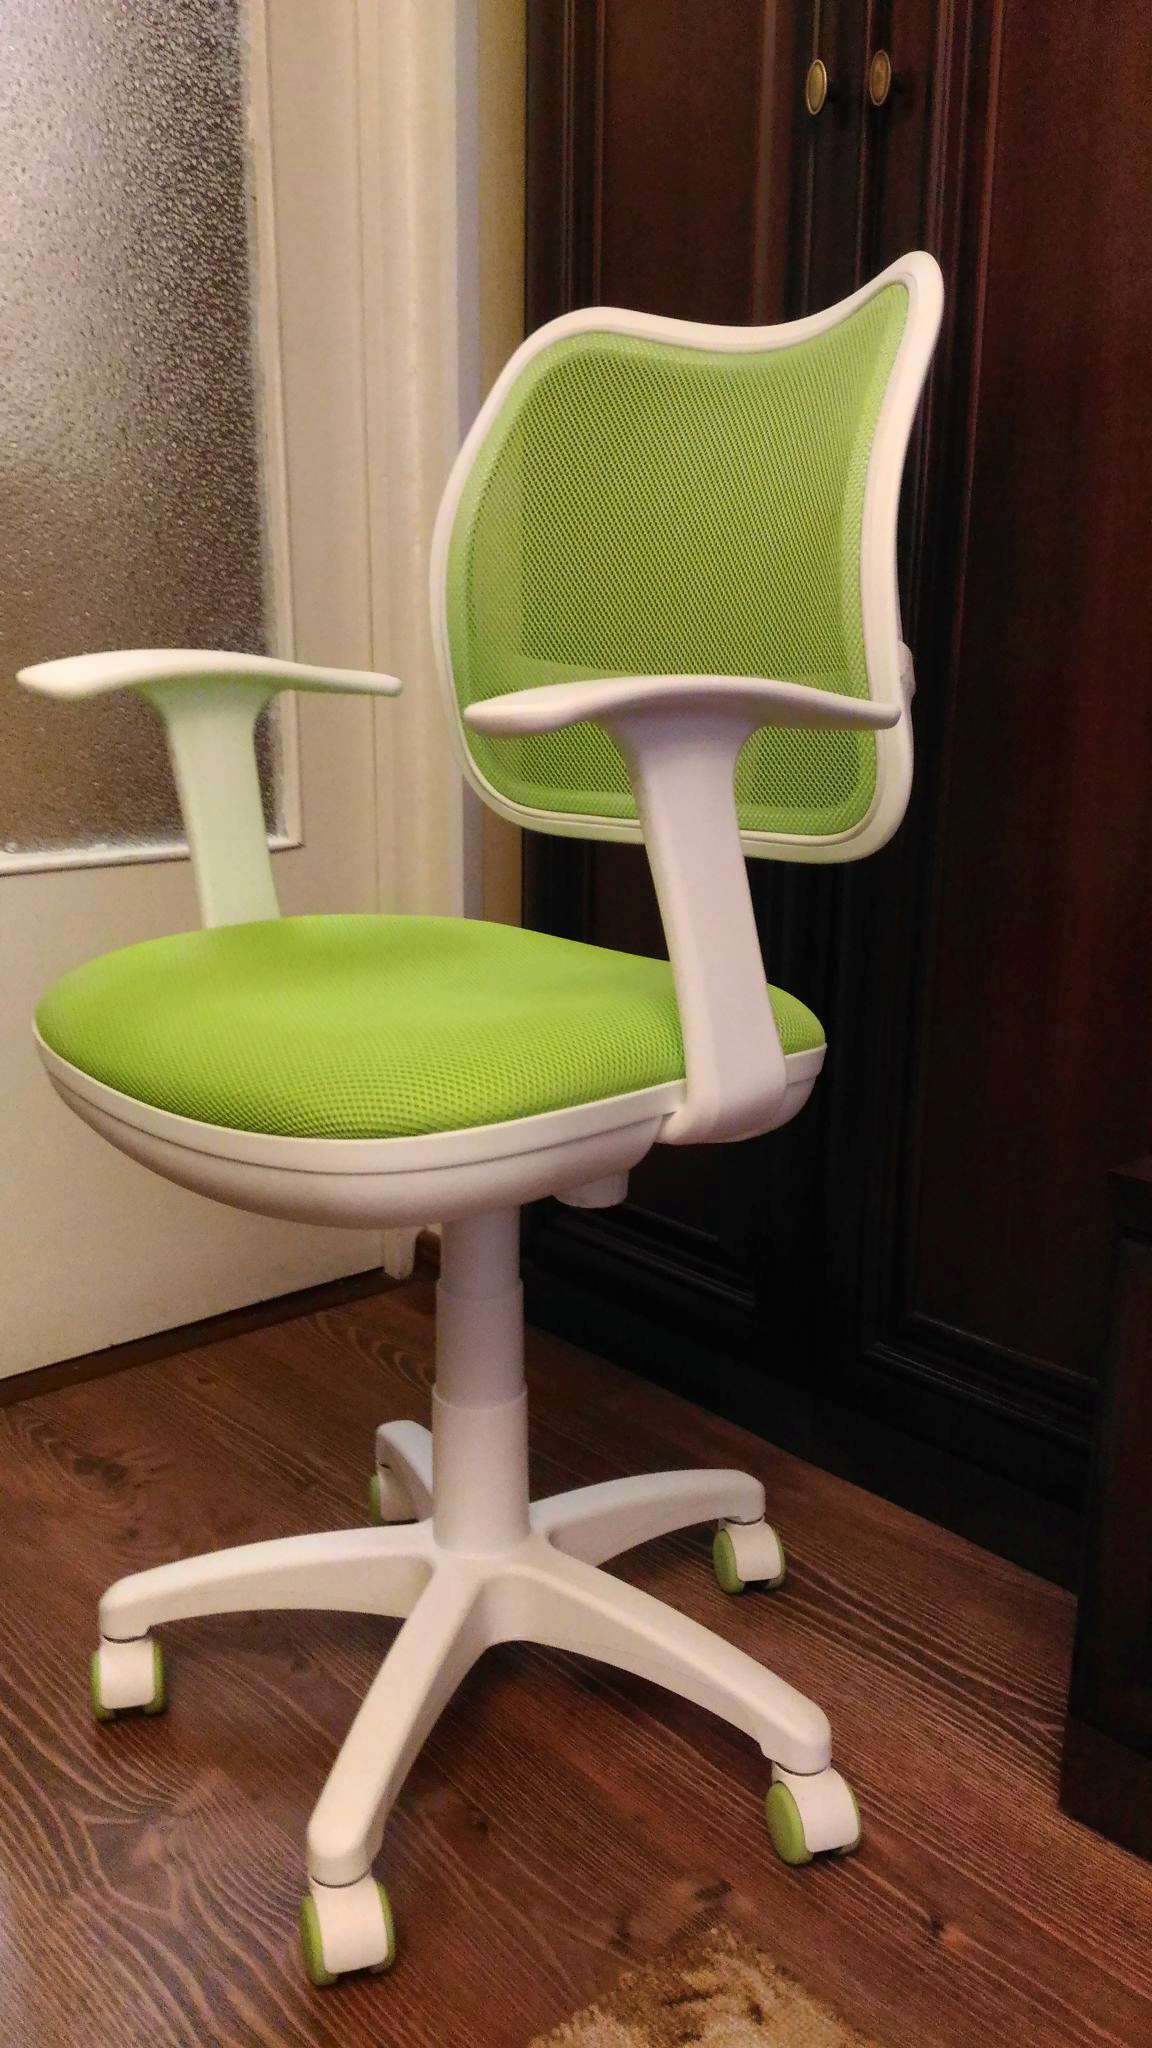 стул компьютерный для школьника зеленый